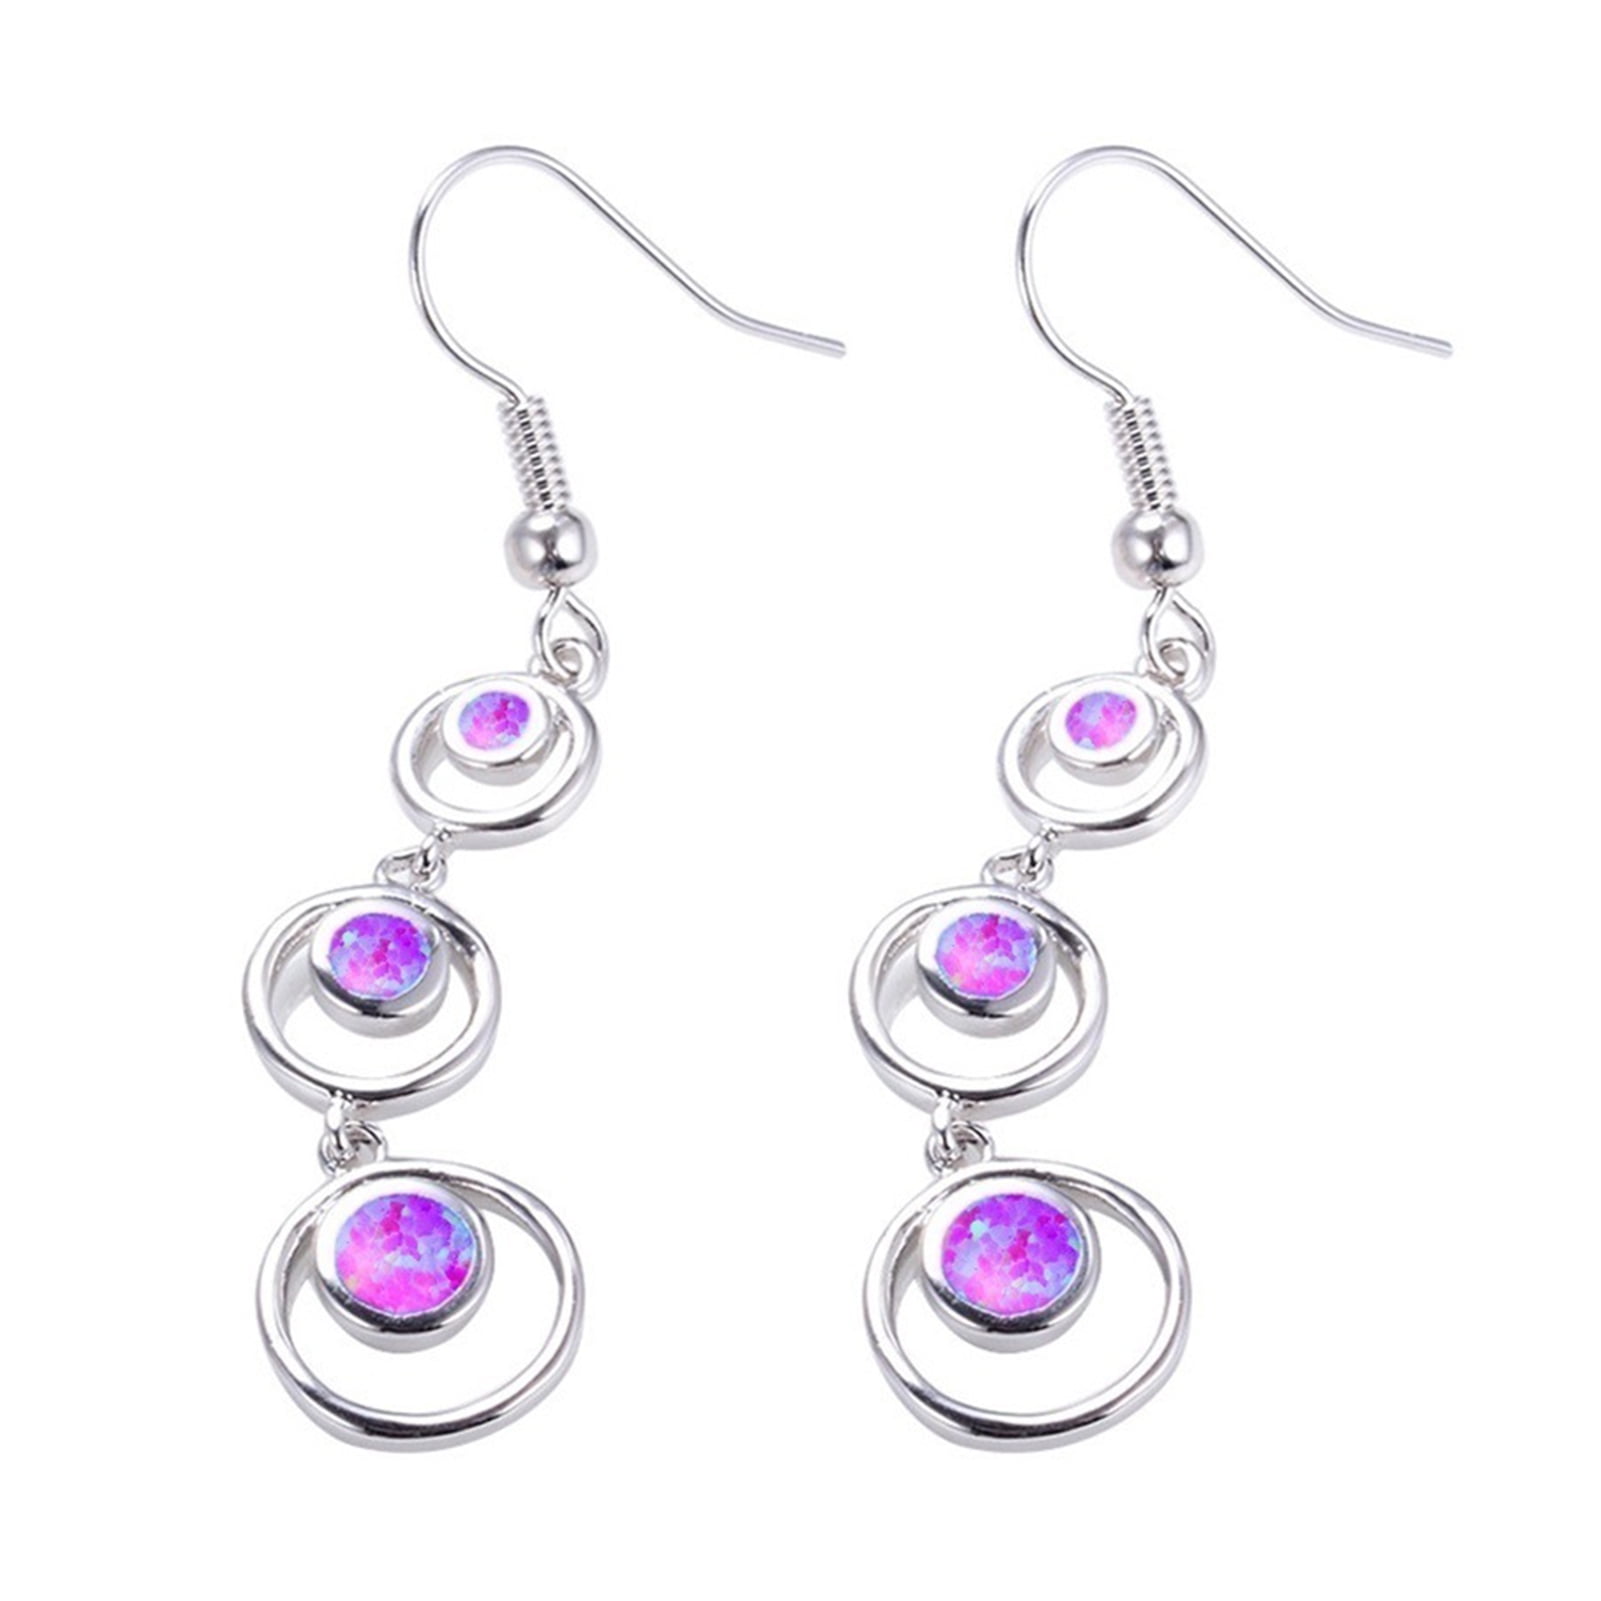 1 pair Elegant Glamorous Crystal Long Tassels Dangle Earrings Luxury  Earrings Jewelry For Women&Teen Girls Party Prom | SHEIN